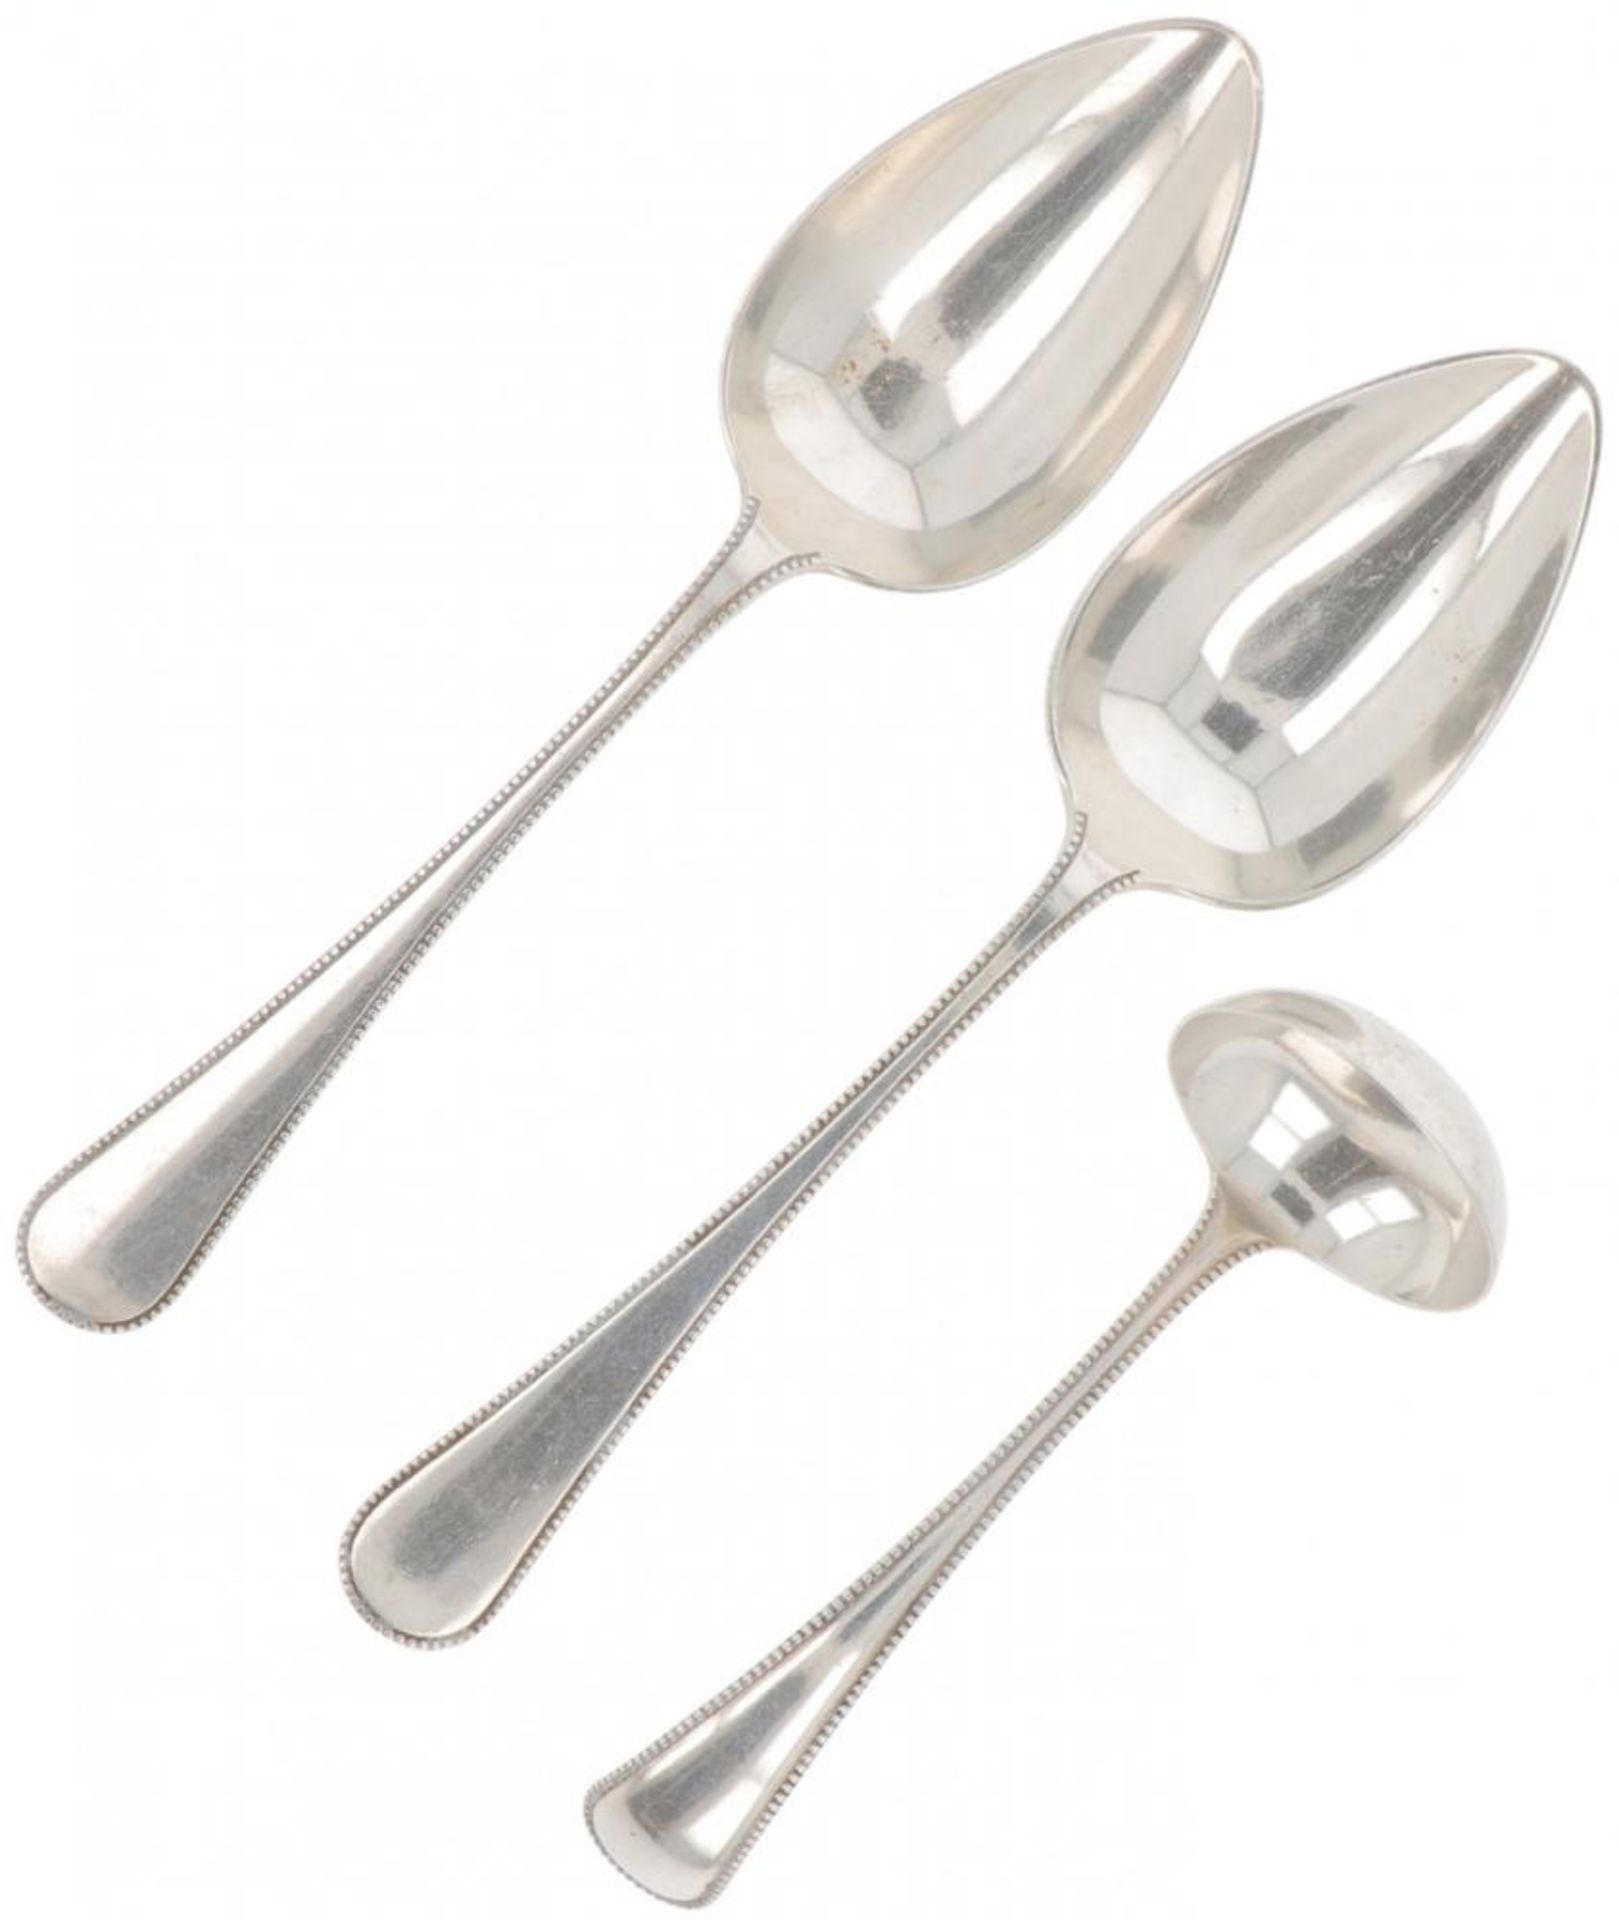 (3) piece lot silver ladles.